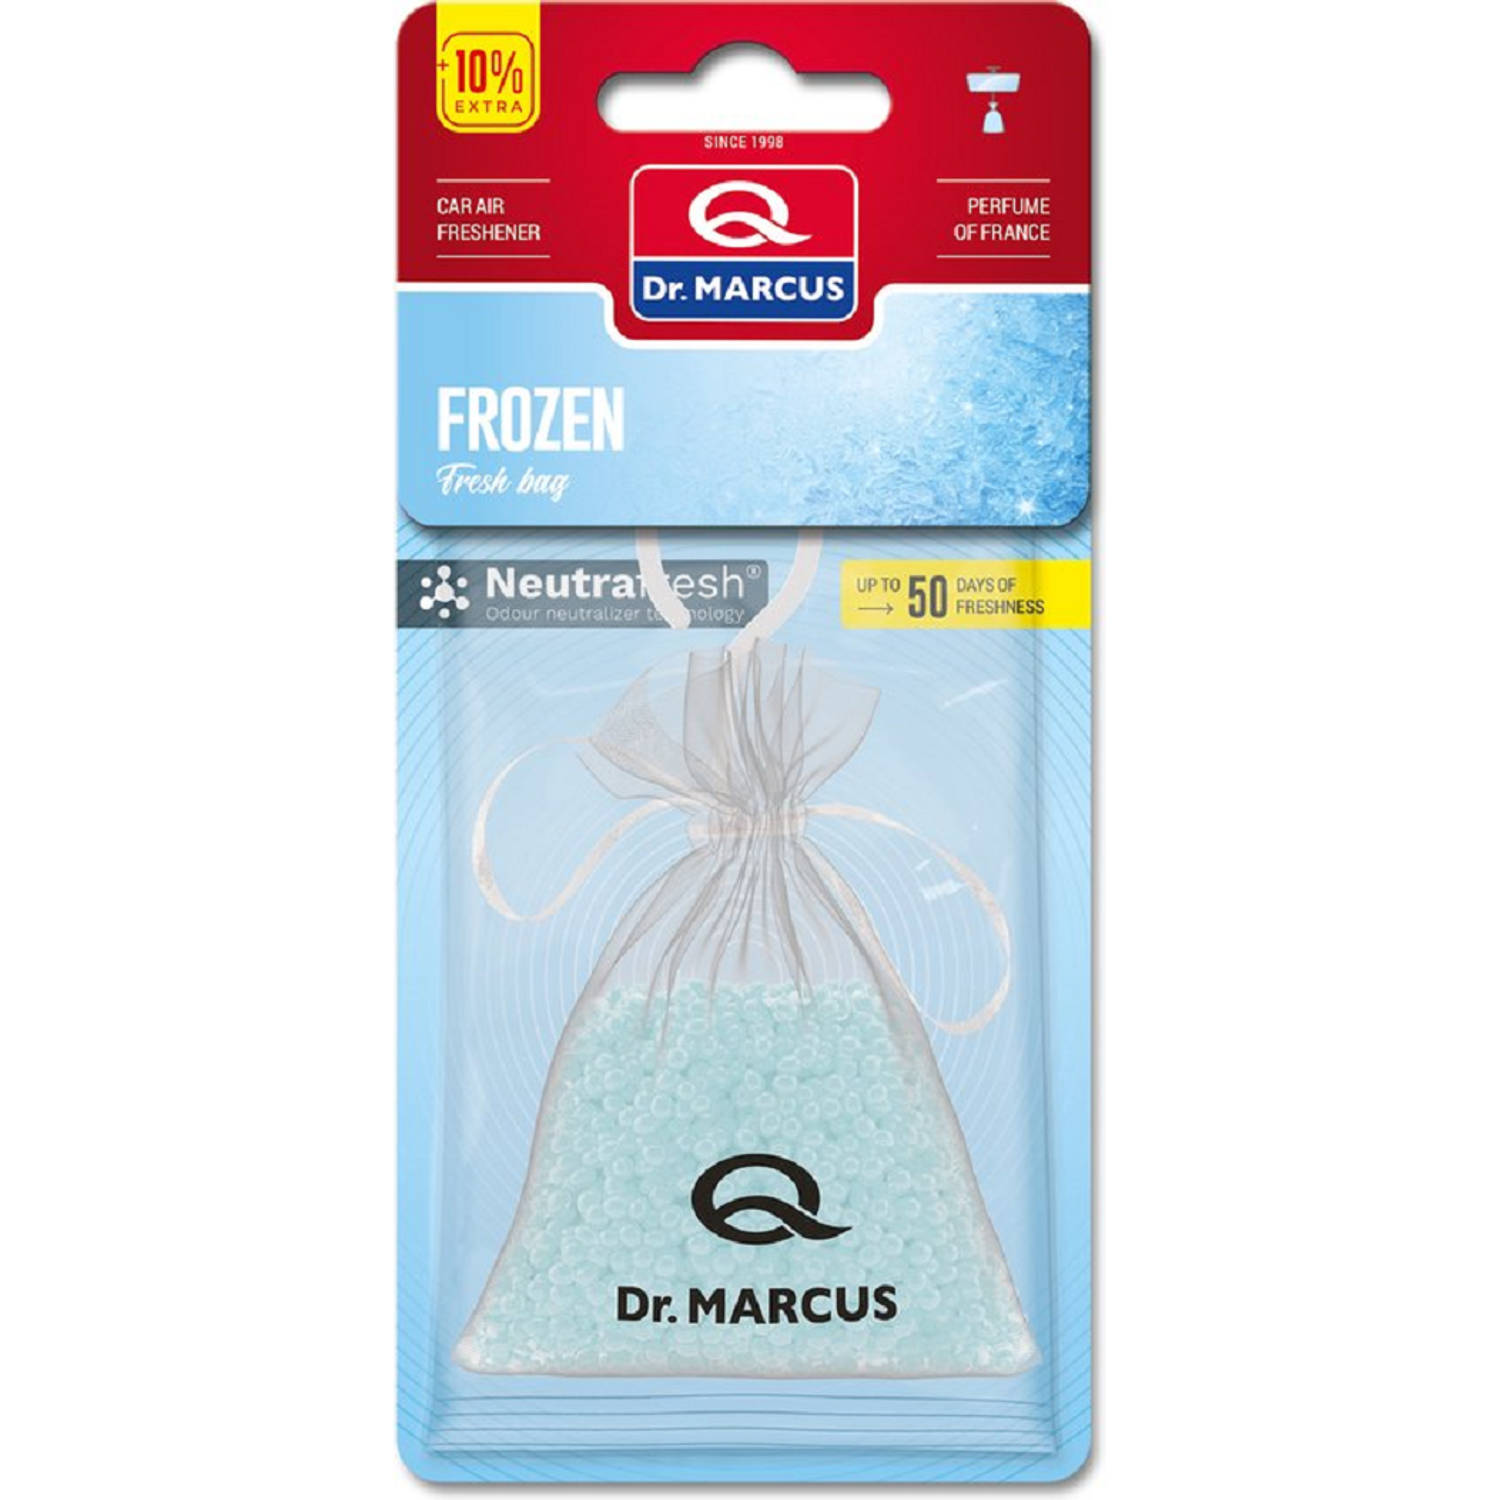 Dr. Marcus Fresh bag - Autogeurtje - Car parfume - Frozen